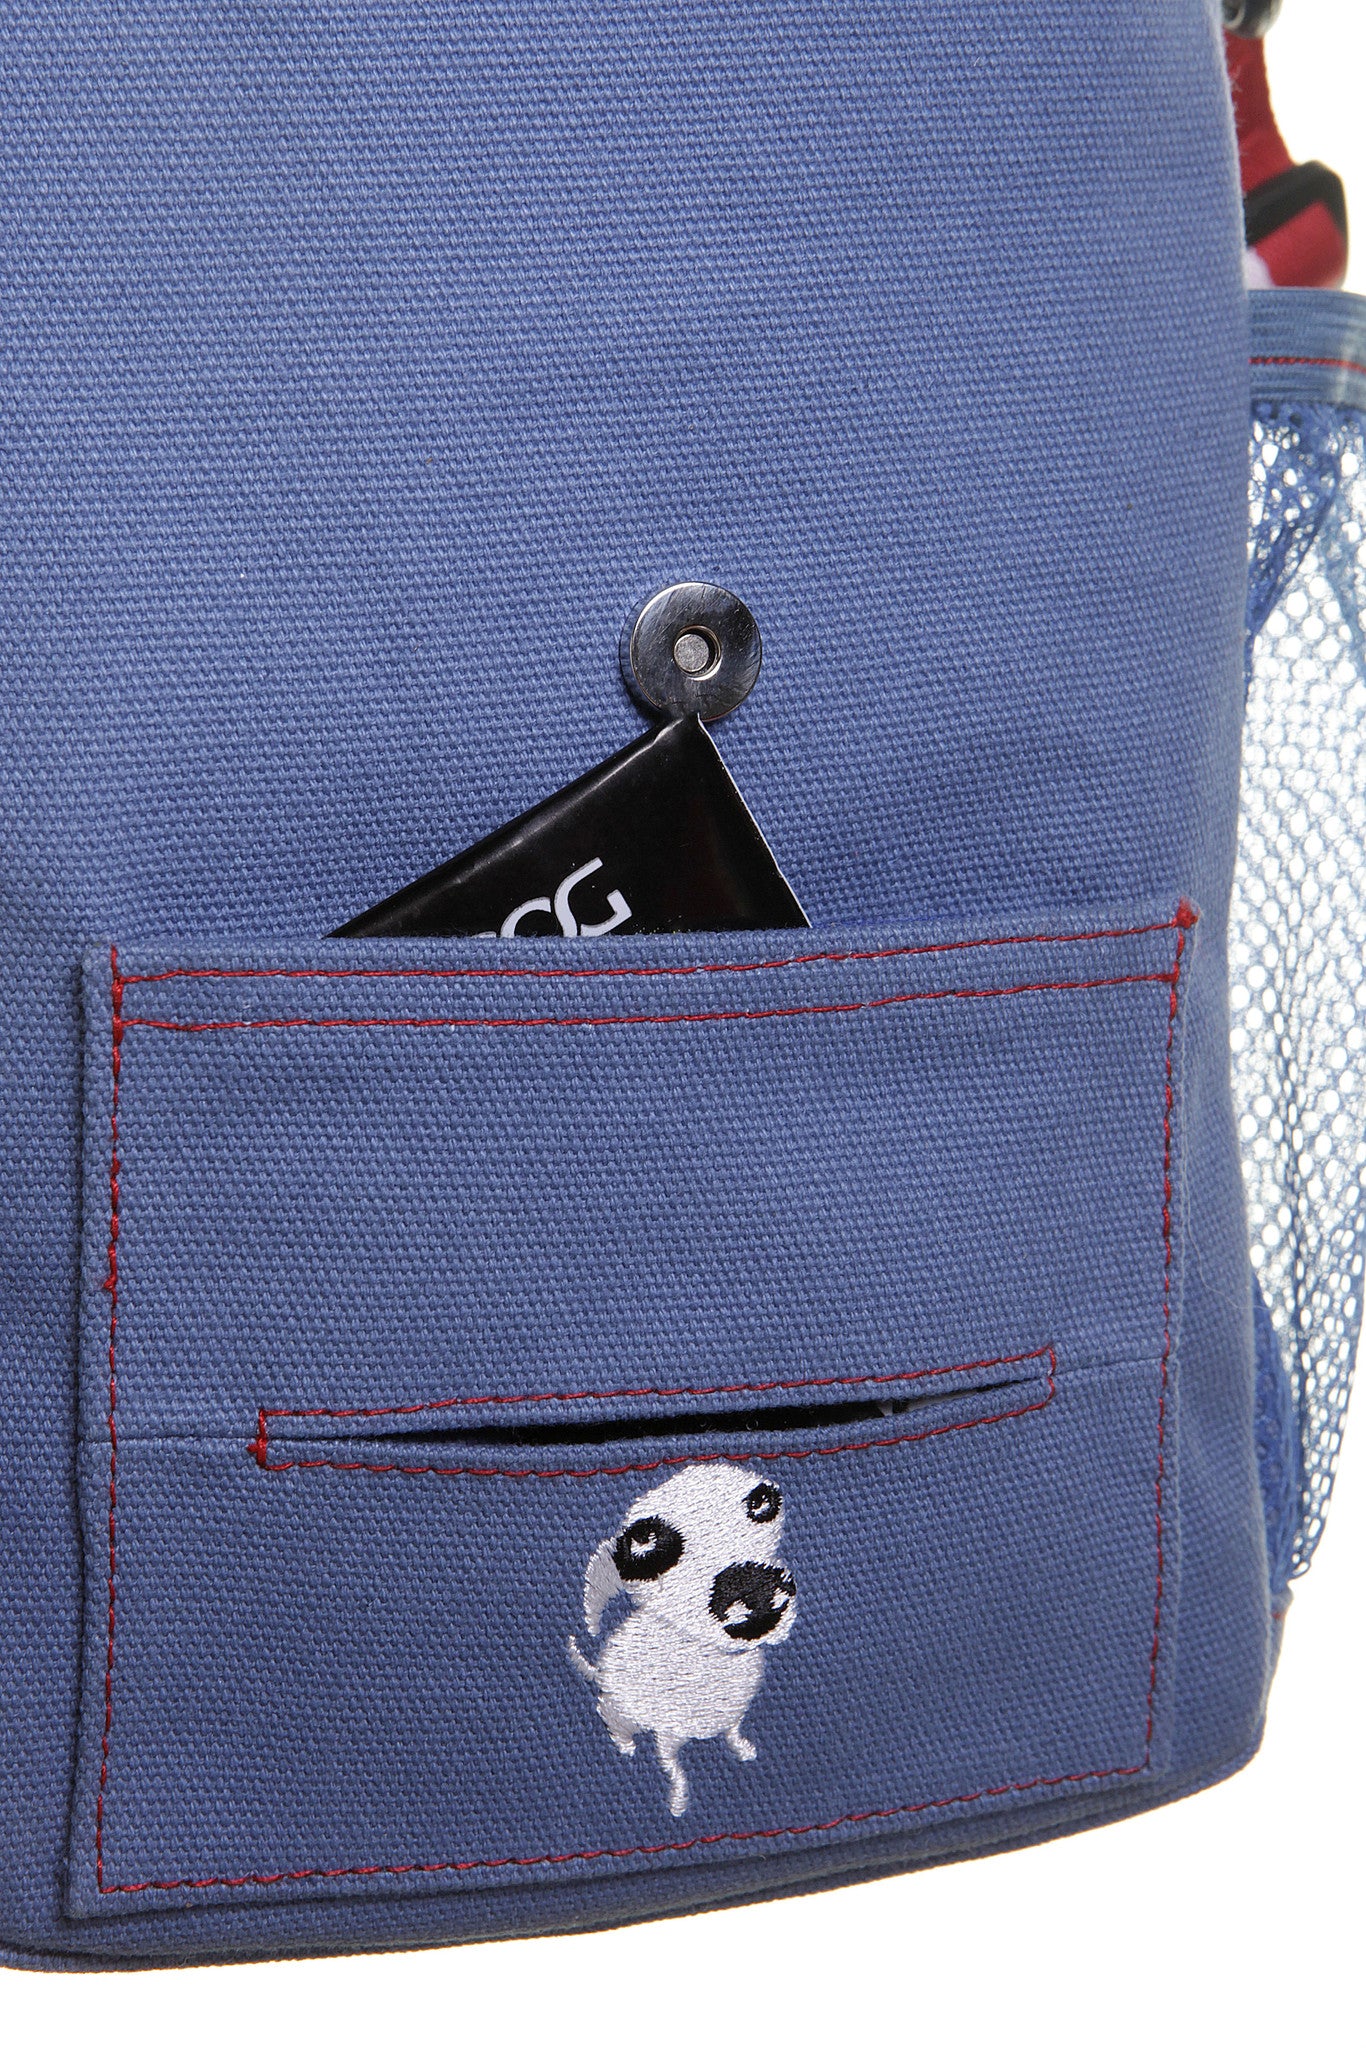 DOOG Walkie Bag | Polka Dot Blue & White | Peticular